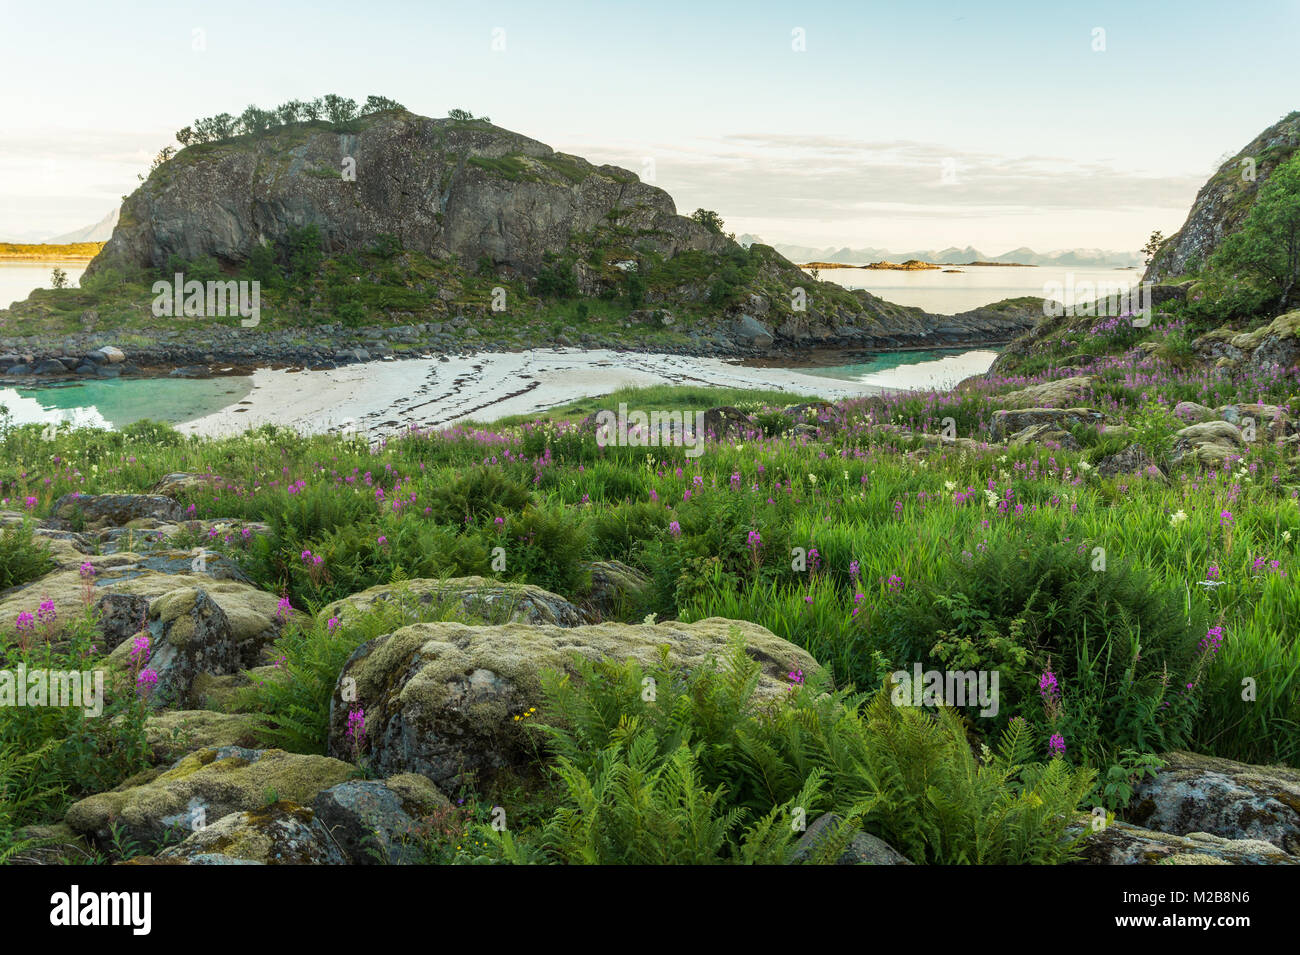 Spiaggia rocciosa e da una spiaggia di sabbia, Lofoten, Norvegia, Trollskarholmen isolotto Arstein Foto Stock